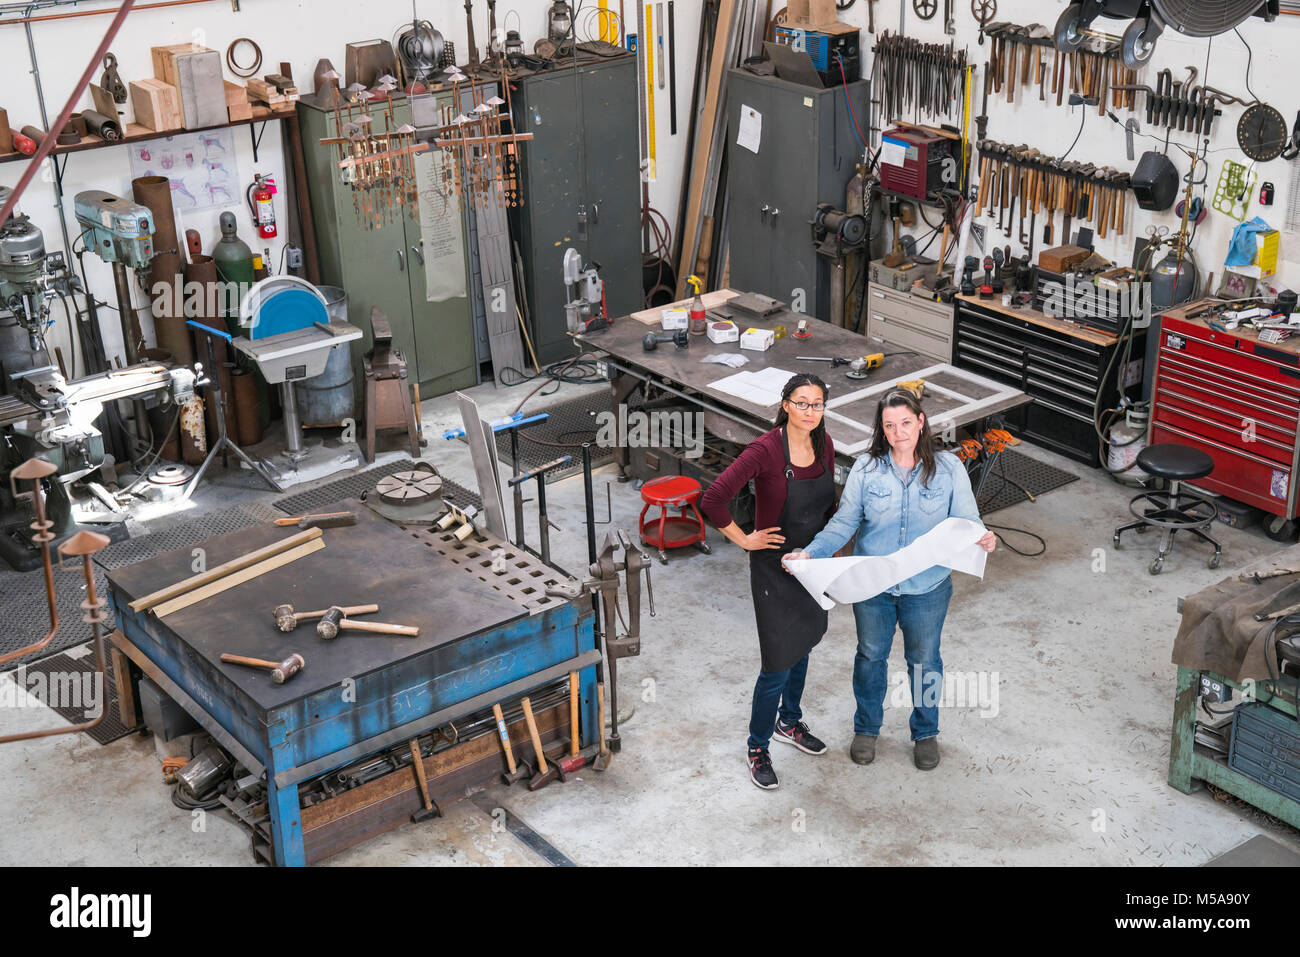 Portrait de deux femmes debout dans l'atelier de métal, holding plan d'action technique. Banque D'Images